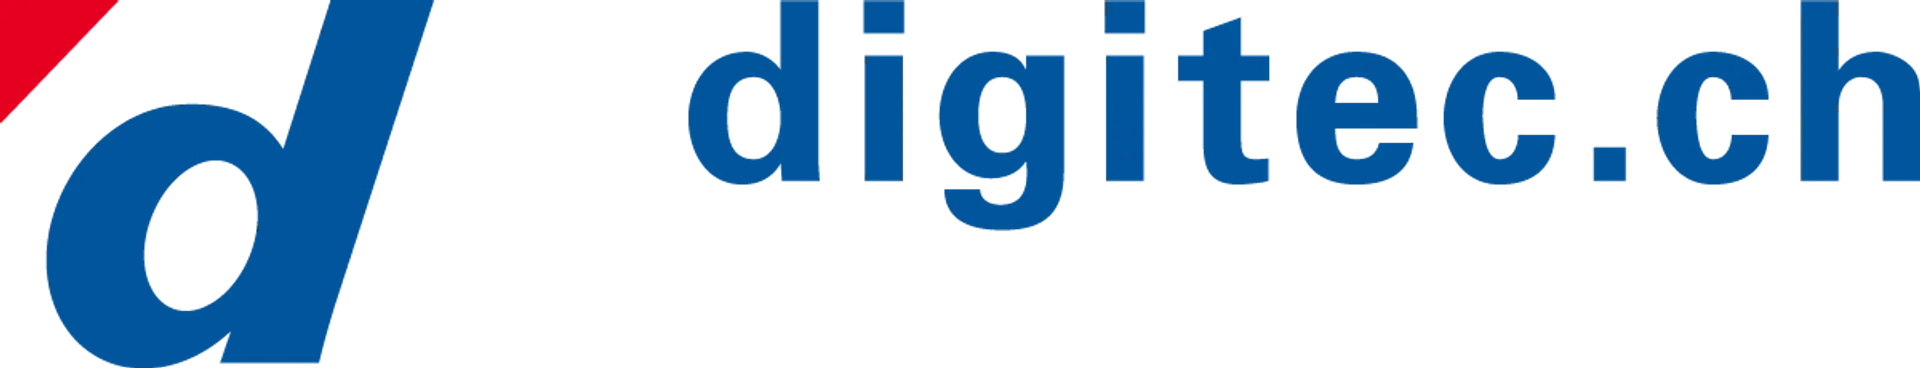 DIGITEC logo